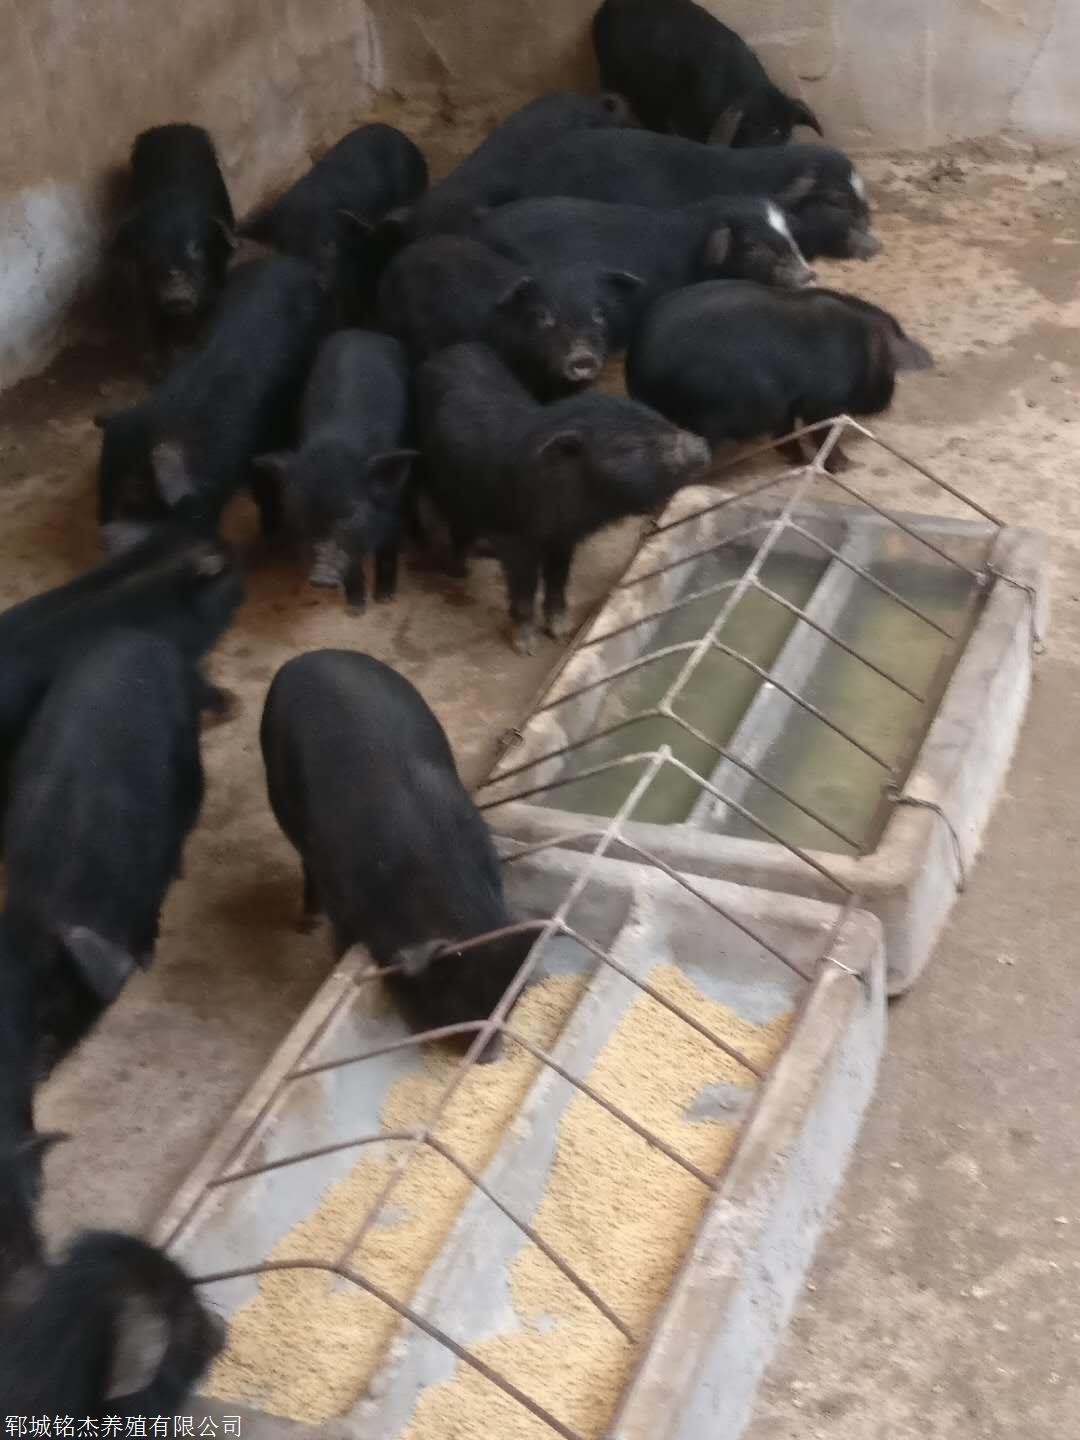 藏香猪种猪一头价格